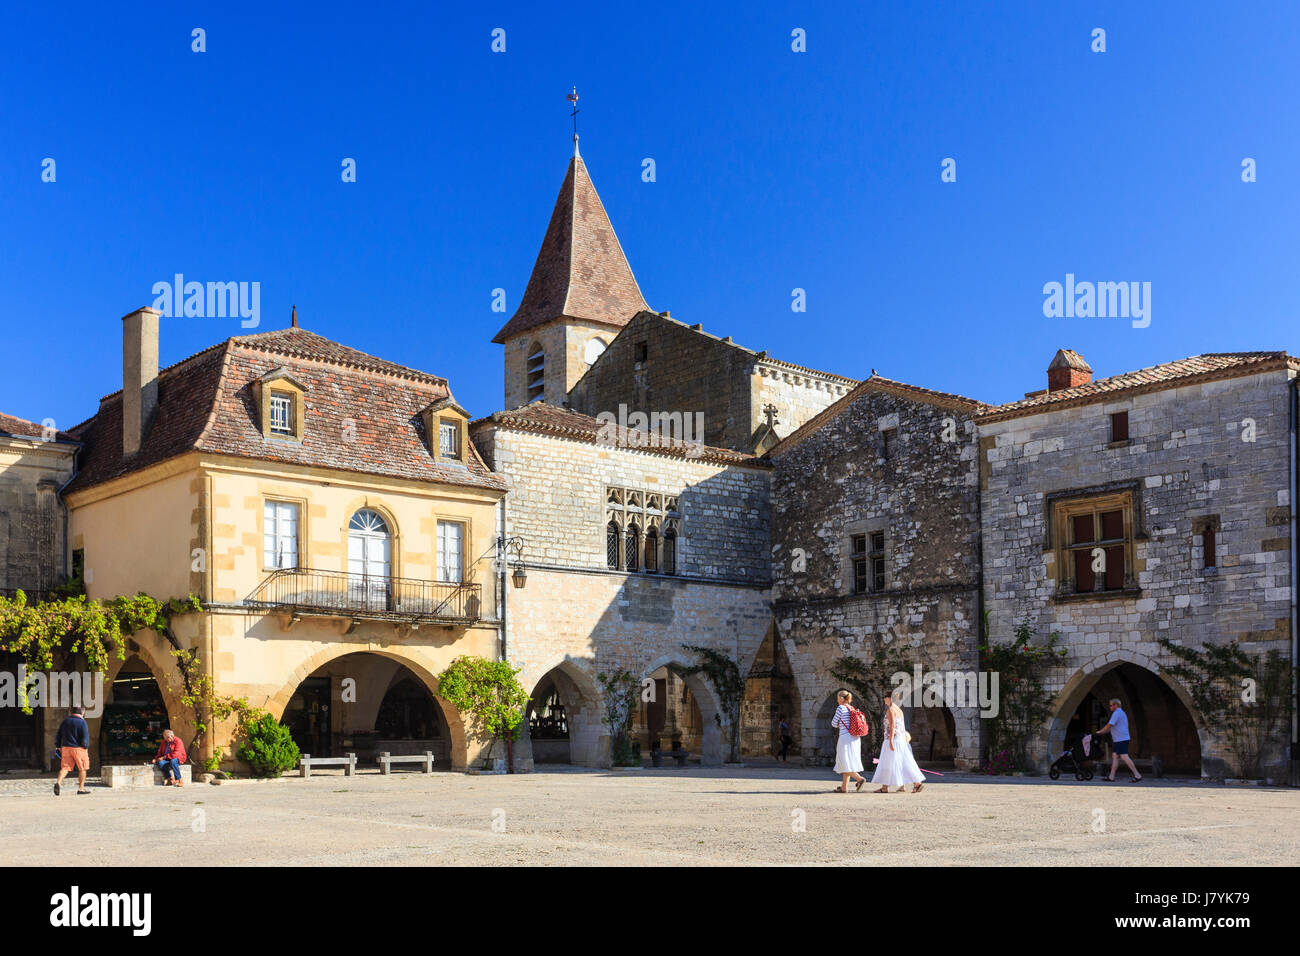 France, Dordogne, Monpazier, les plus Beaux villages de France (les plus beaux villages de France), place des Cornieres Banque D'Images